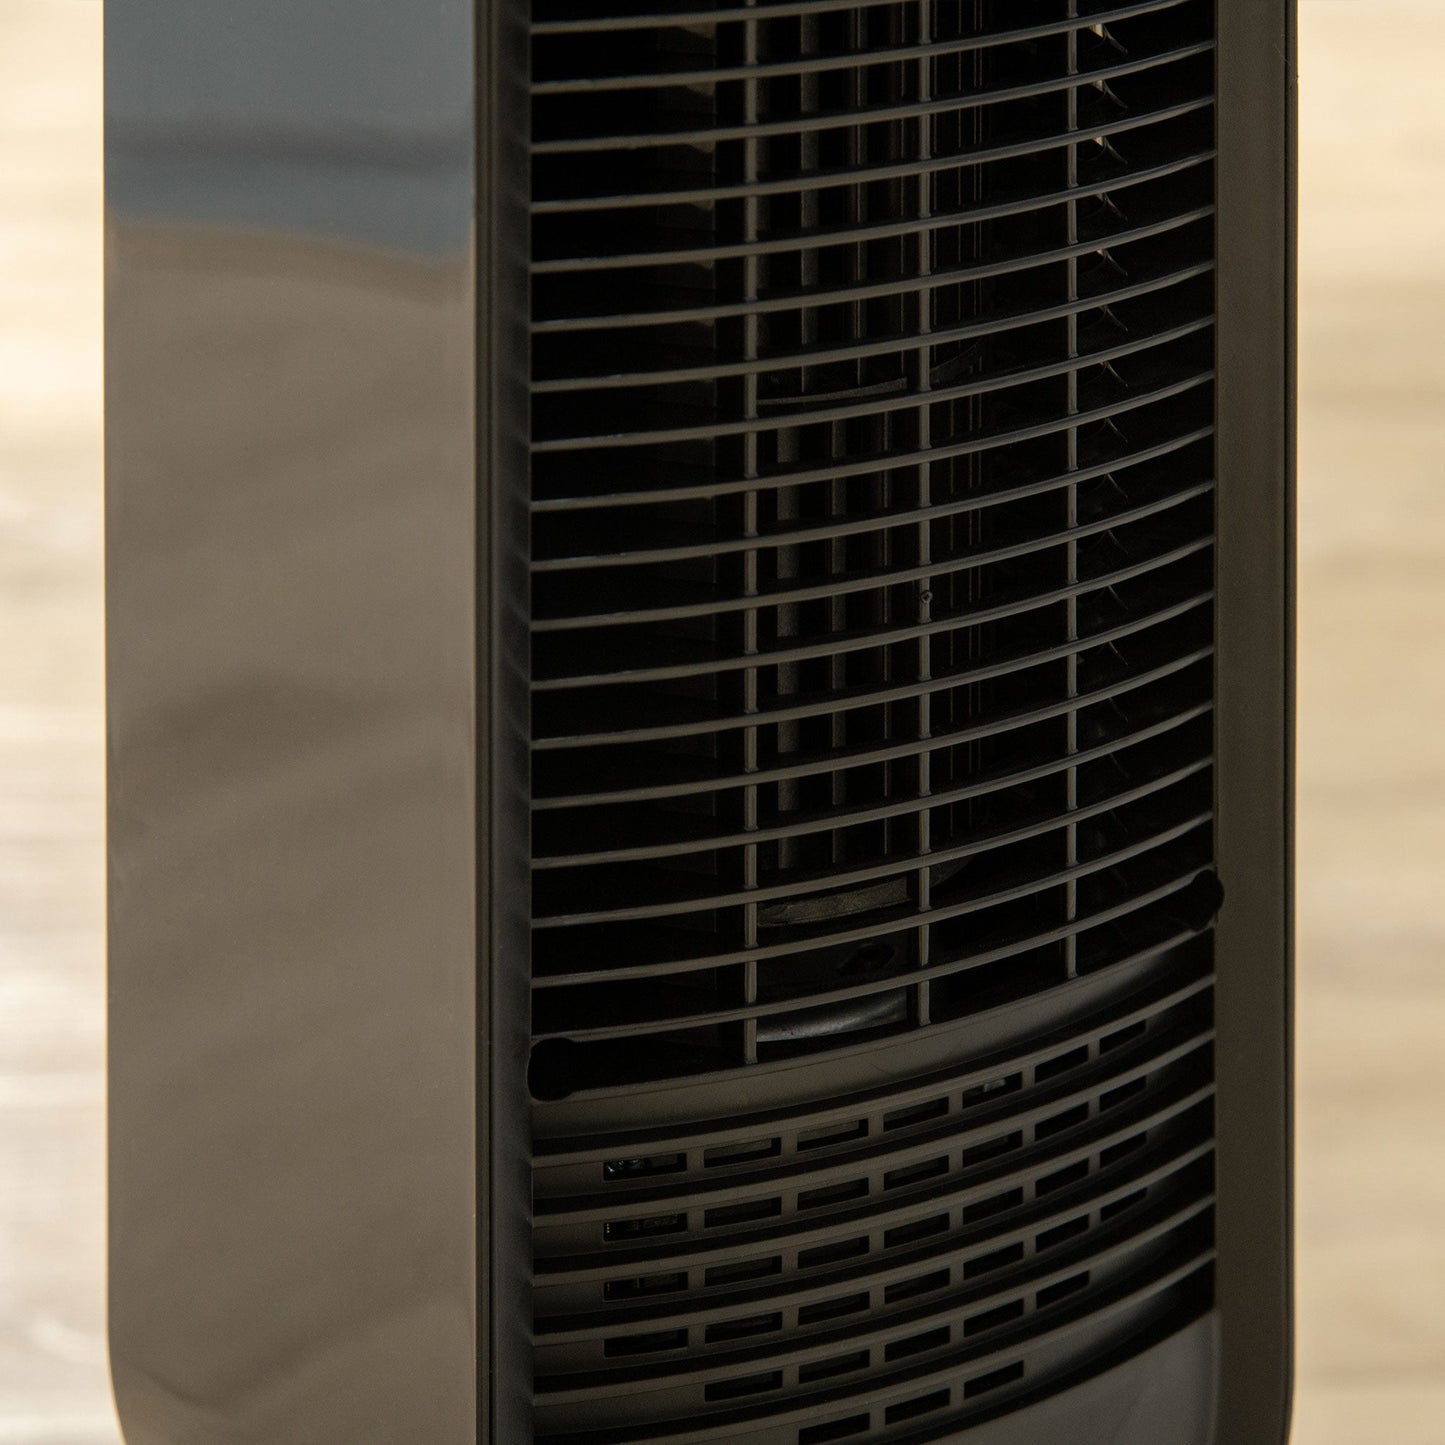 HOMCOM 39" Oscillating Tower Fan with 3 Speeds, 12hr Timer, LED Panel & Remote, Black Bedroom Cooling